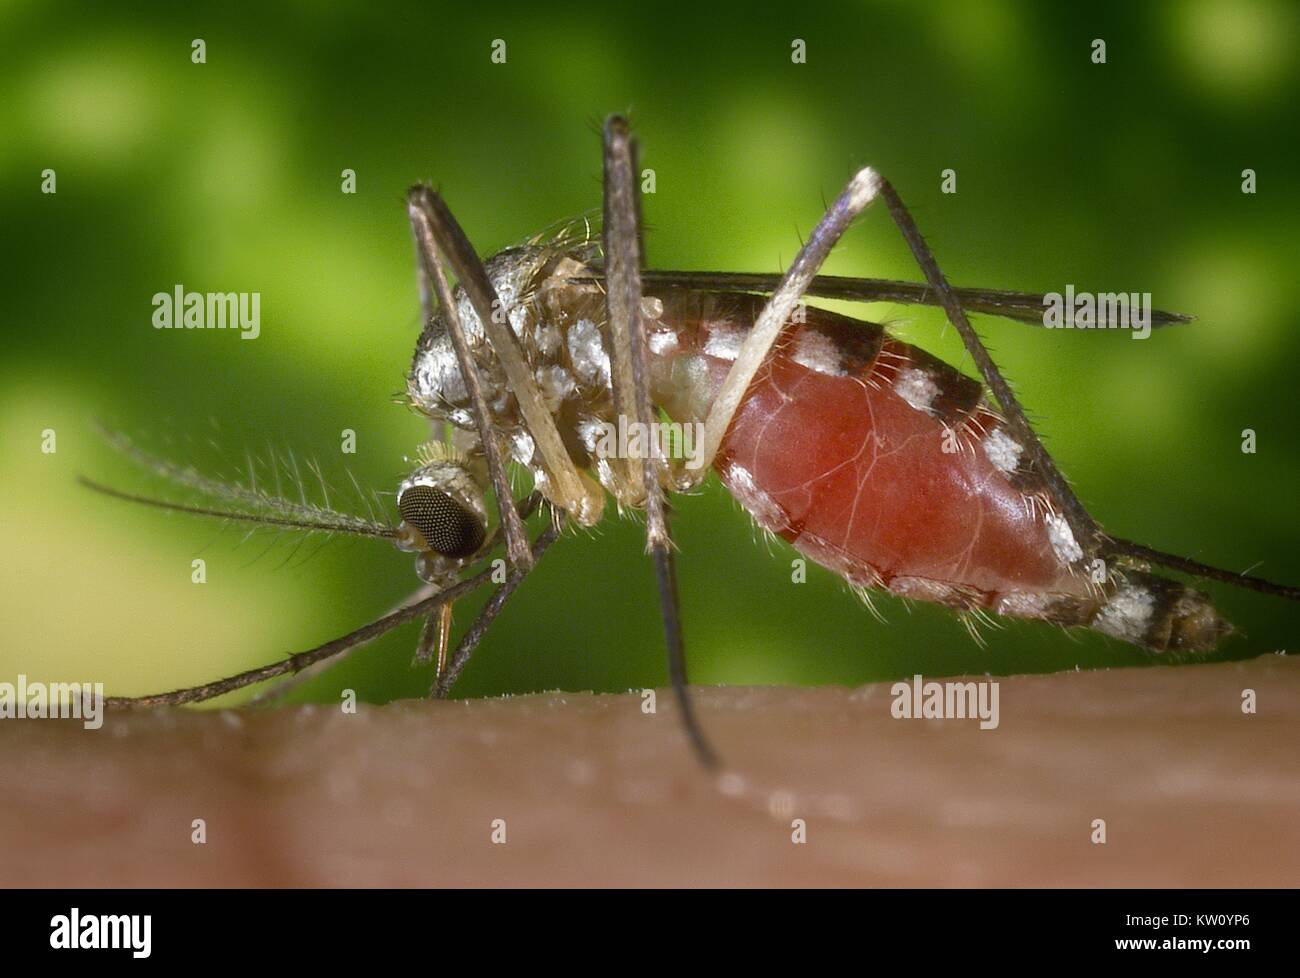 Un Ochlerotatus triseriatus alimentazione di zanzara sulla cima di una mano umana. Noto anche come Aedes triseriatus, e comunemente noto come 'treehole mosquito', questa specie è stata identificata nel pool di zanzara riportati come positivi per il virus del Nilo occidentale, ed è anche un vettore di sapere per La Crosse virus. Immagine cortesia CDC/James Gathany, 2002. Foto Stock